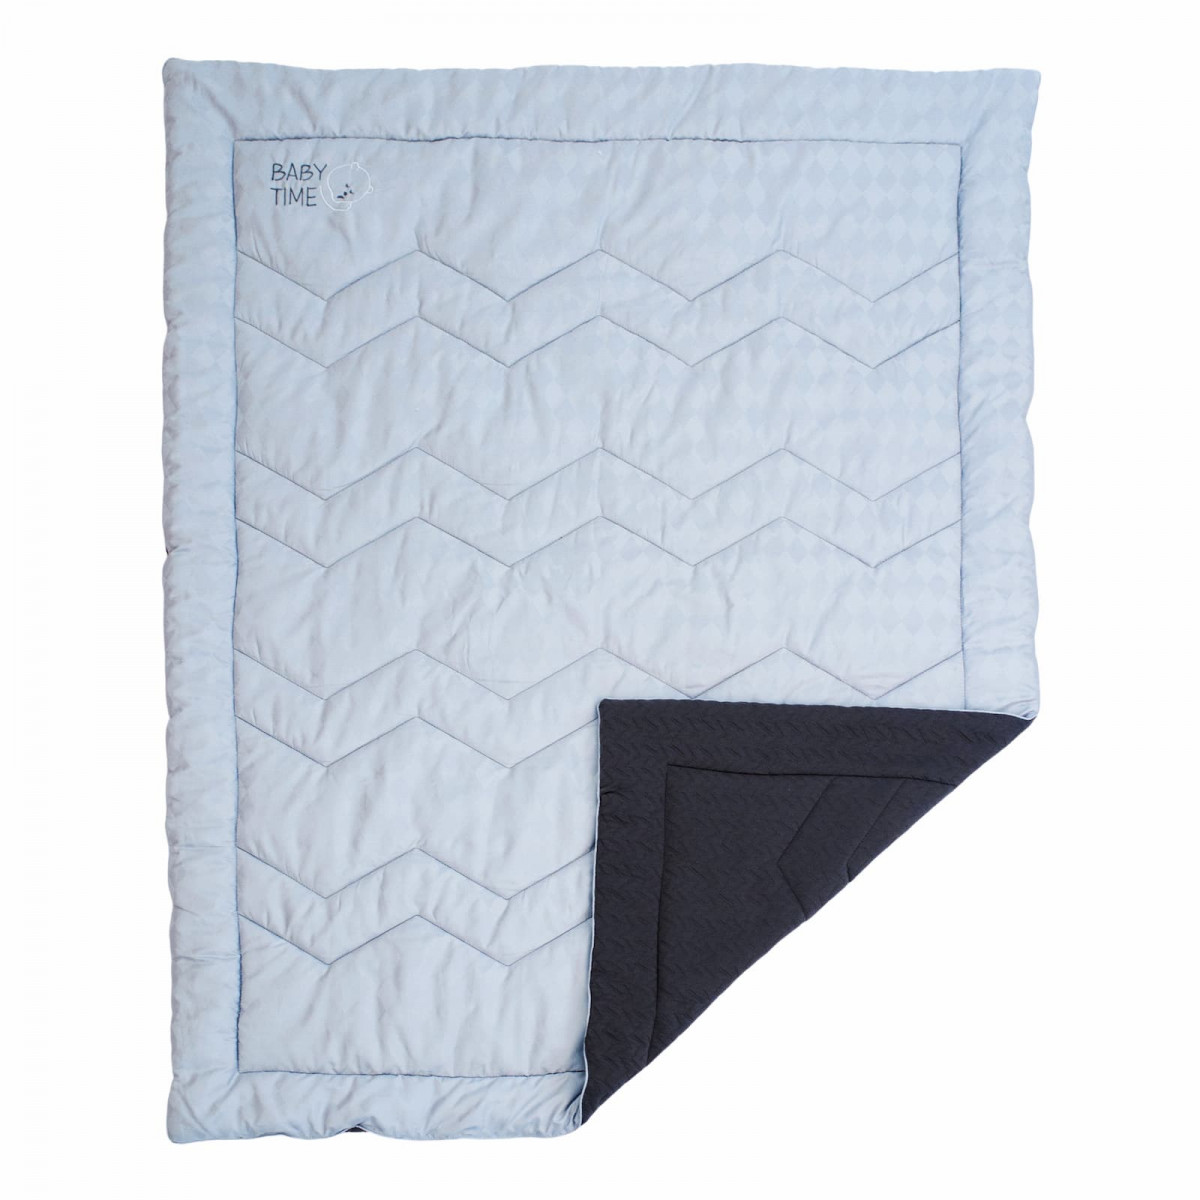 Детское одеяло Всесезонное Bravo цвет: серый (110х140 см), размер 110х140 см